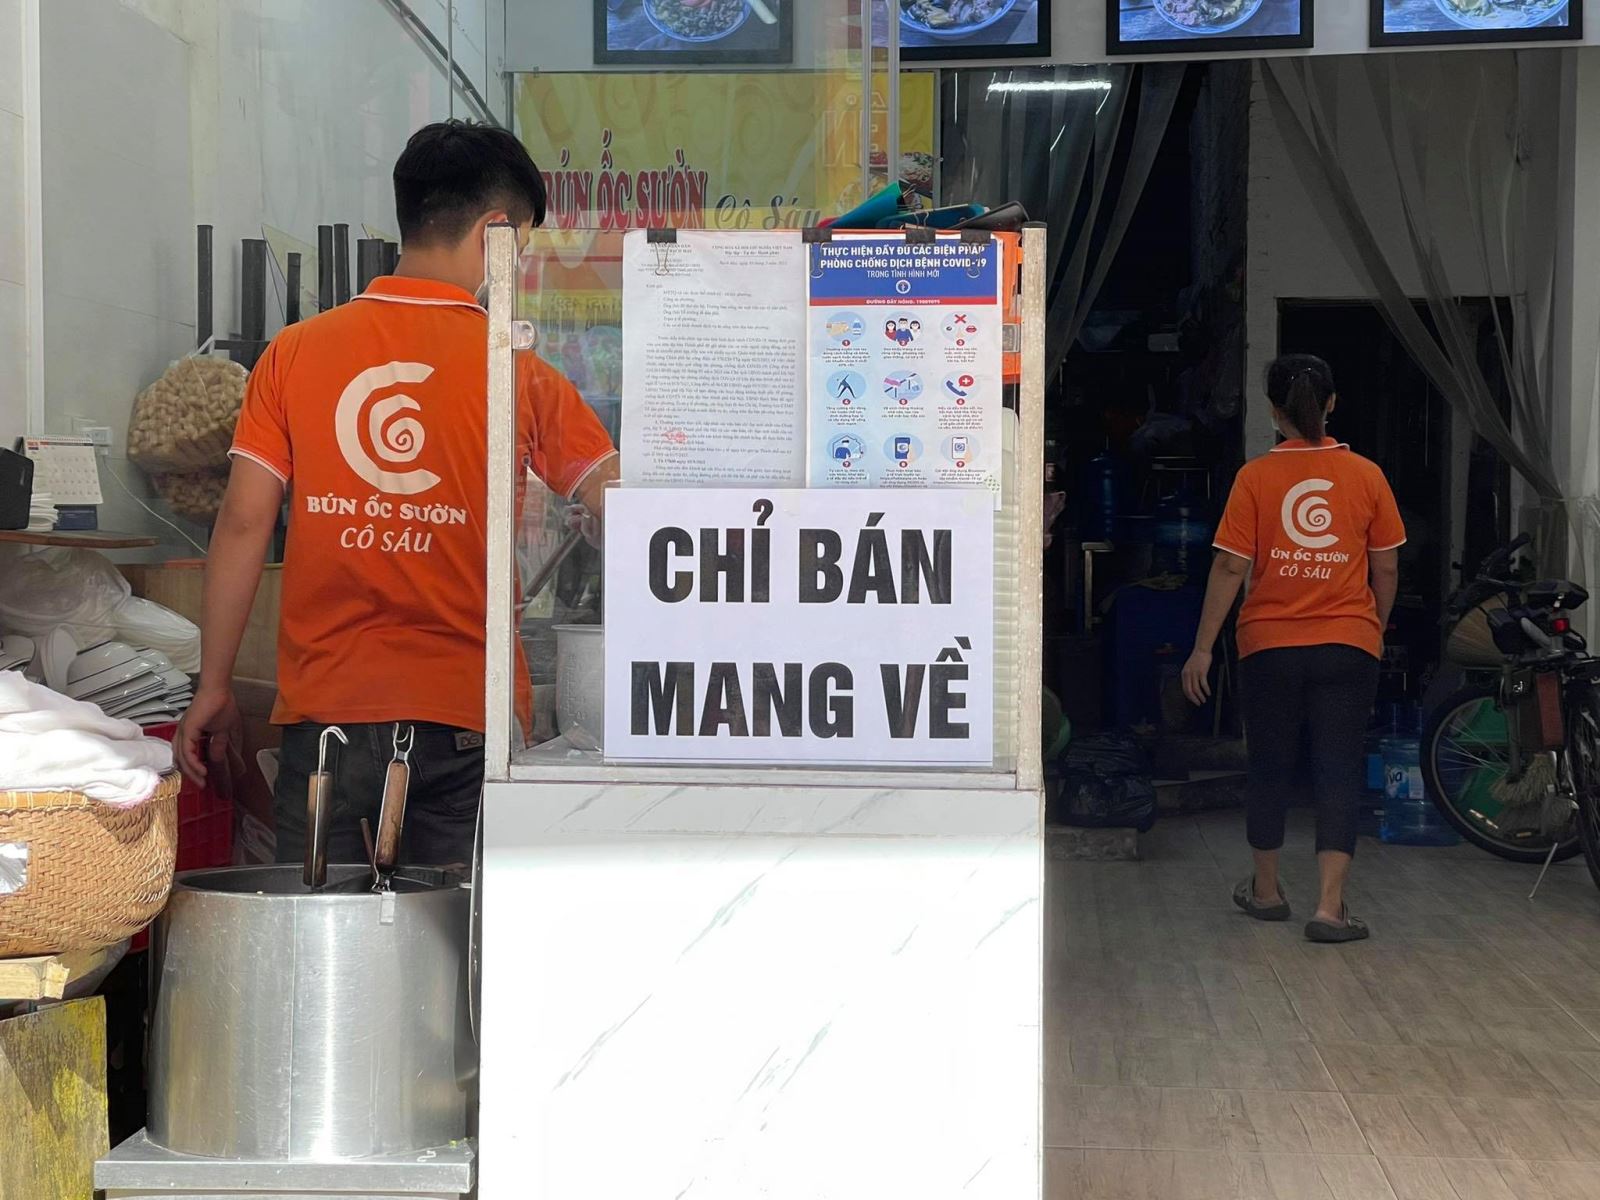 Hà Nội: Cho phép mở một số cơ sở kinh doanh, quán ăn được bán mang về tại các địa bàn an toàn